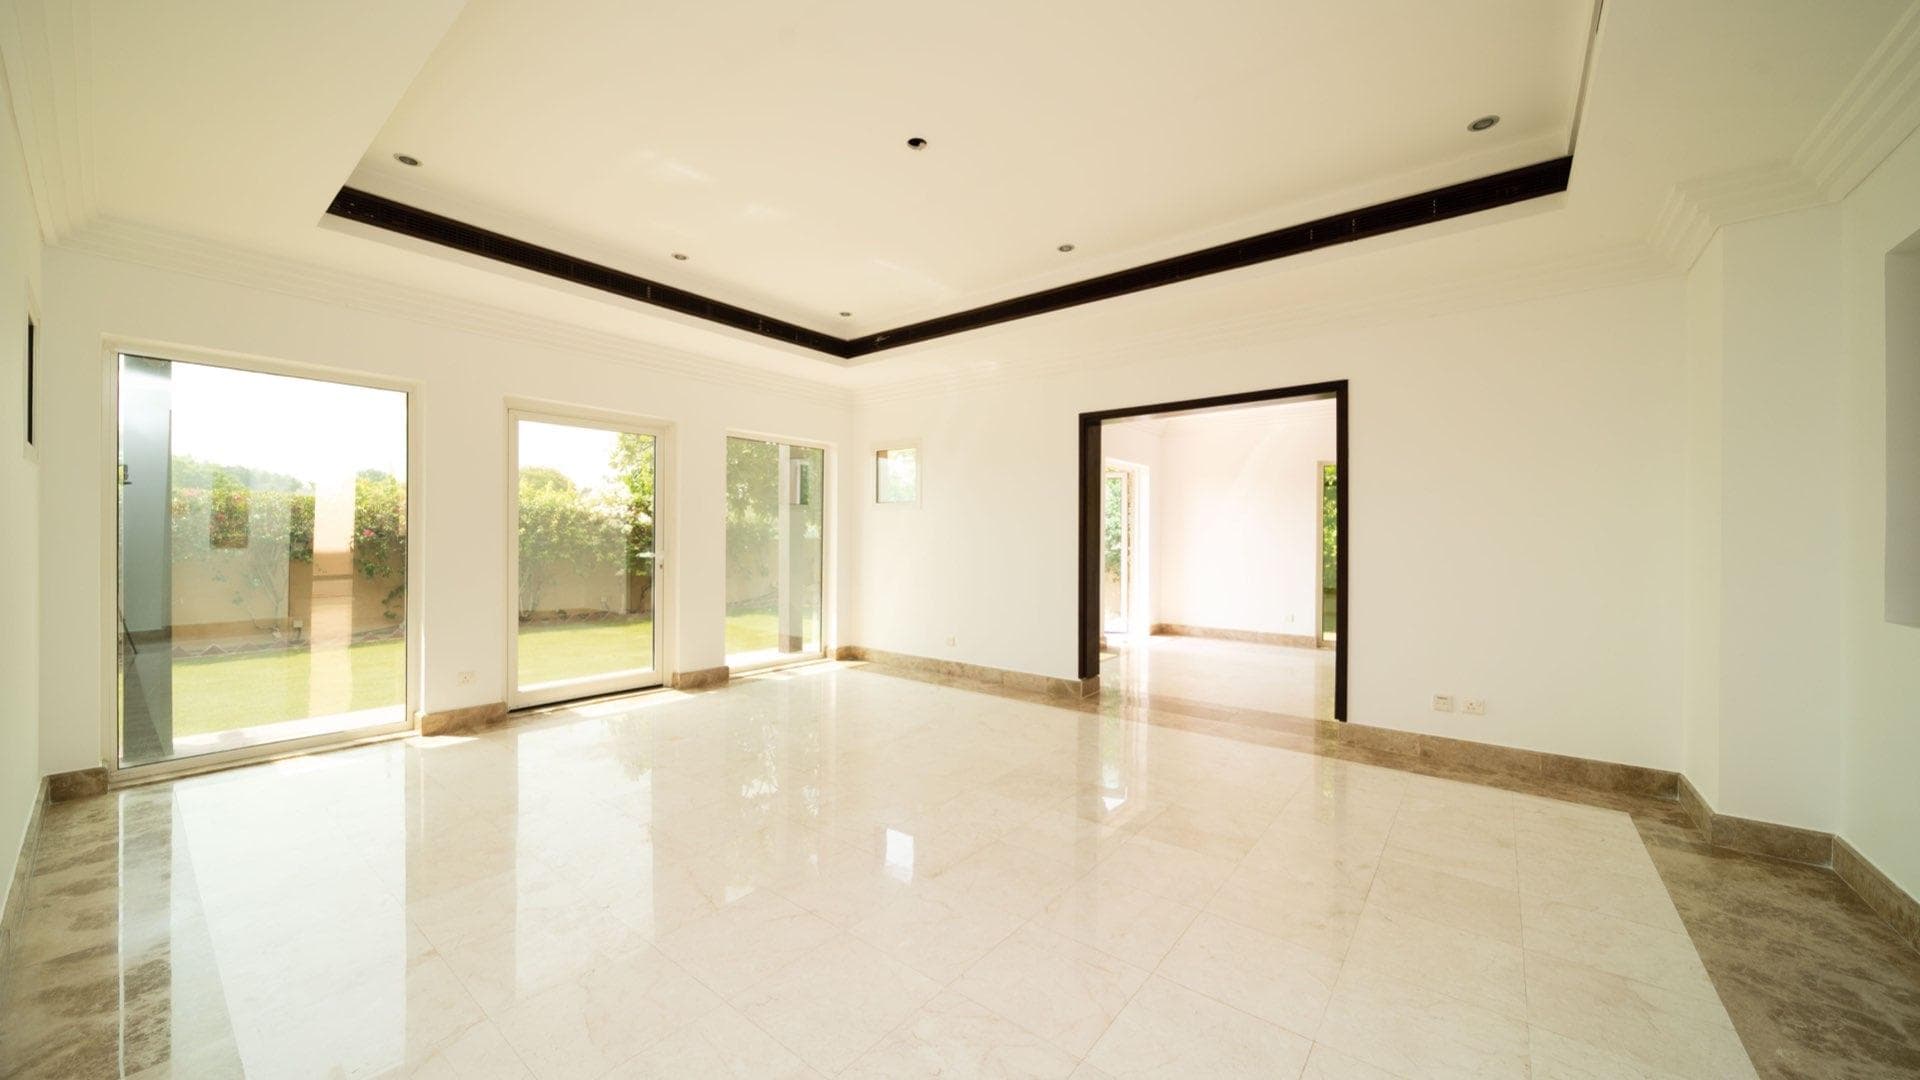 5 Bedroom Villa For Sale Hattan Lp14225 2c059955d88b8800.jpg